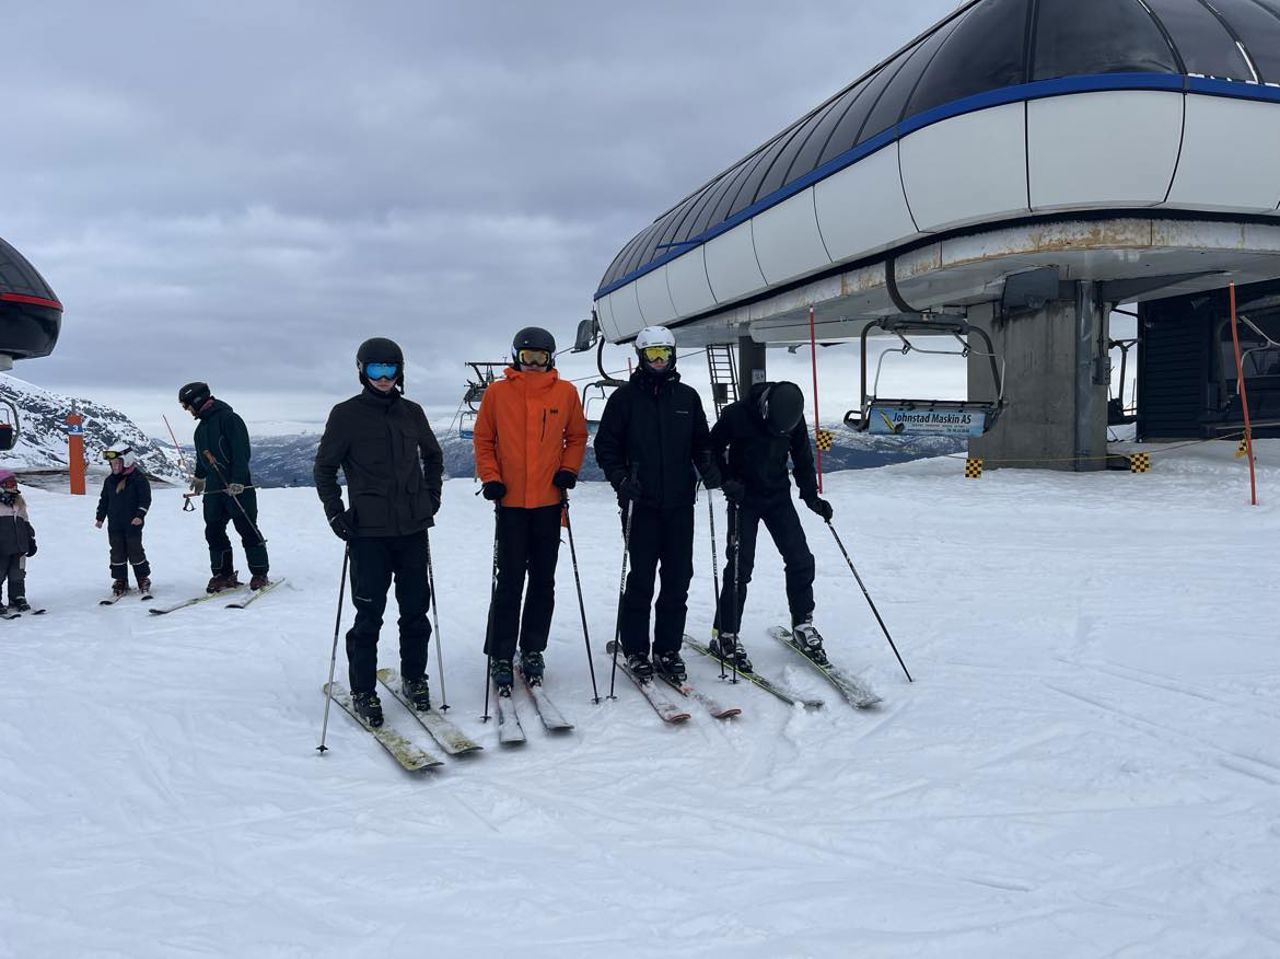 Fire gutter på slalom i skibakken